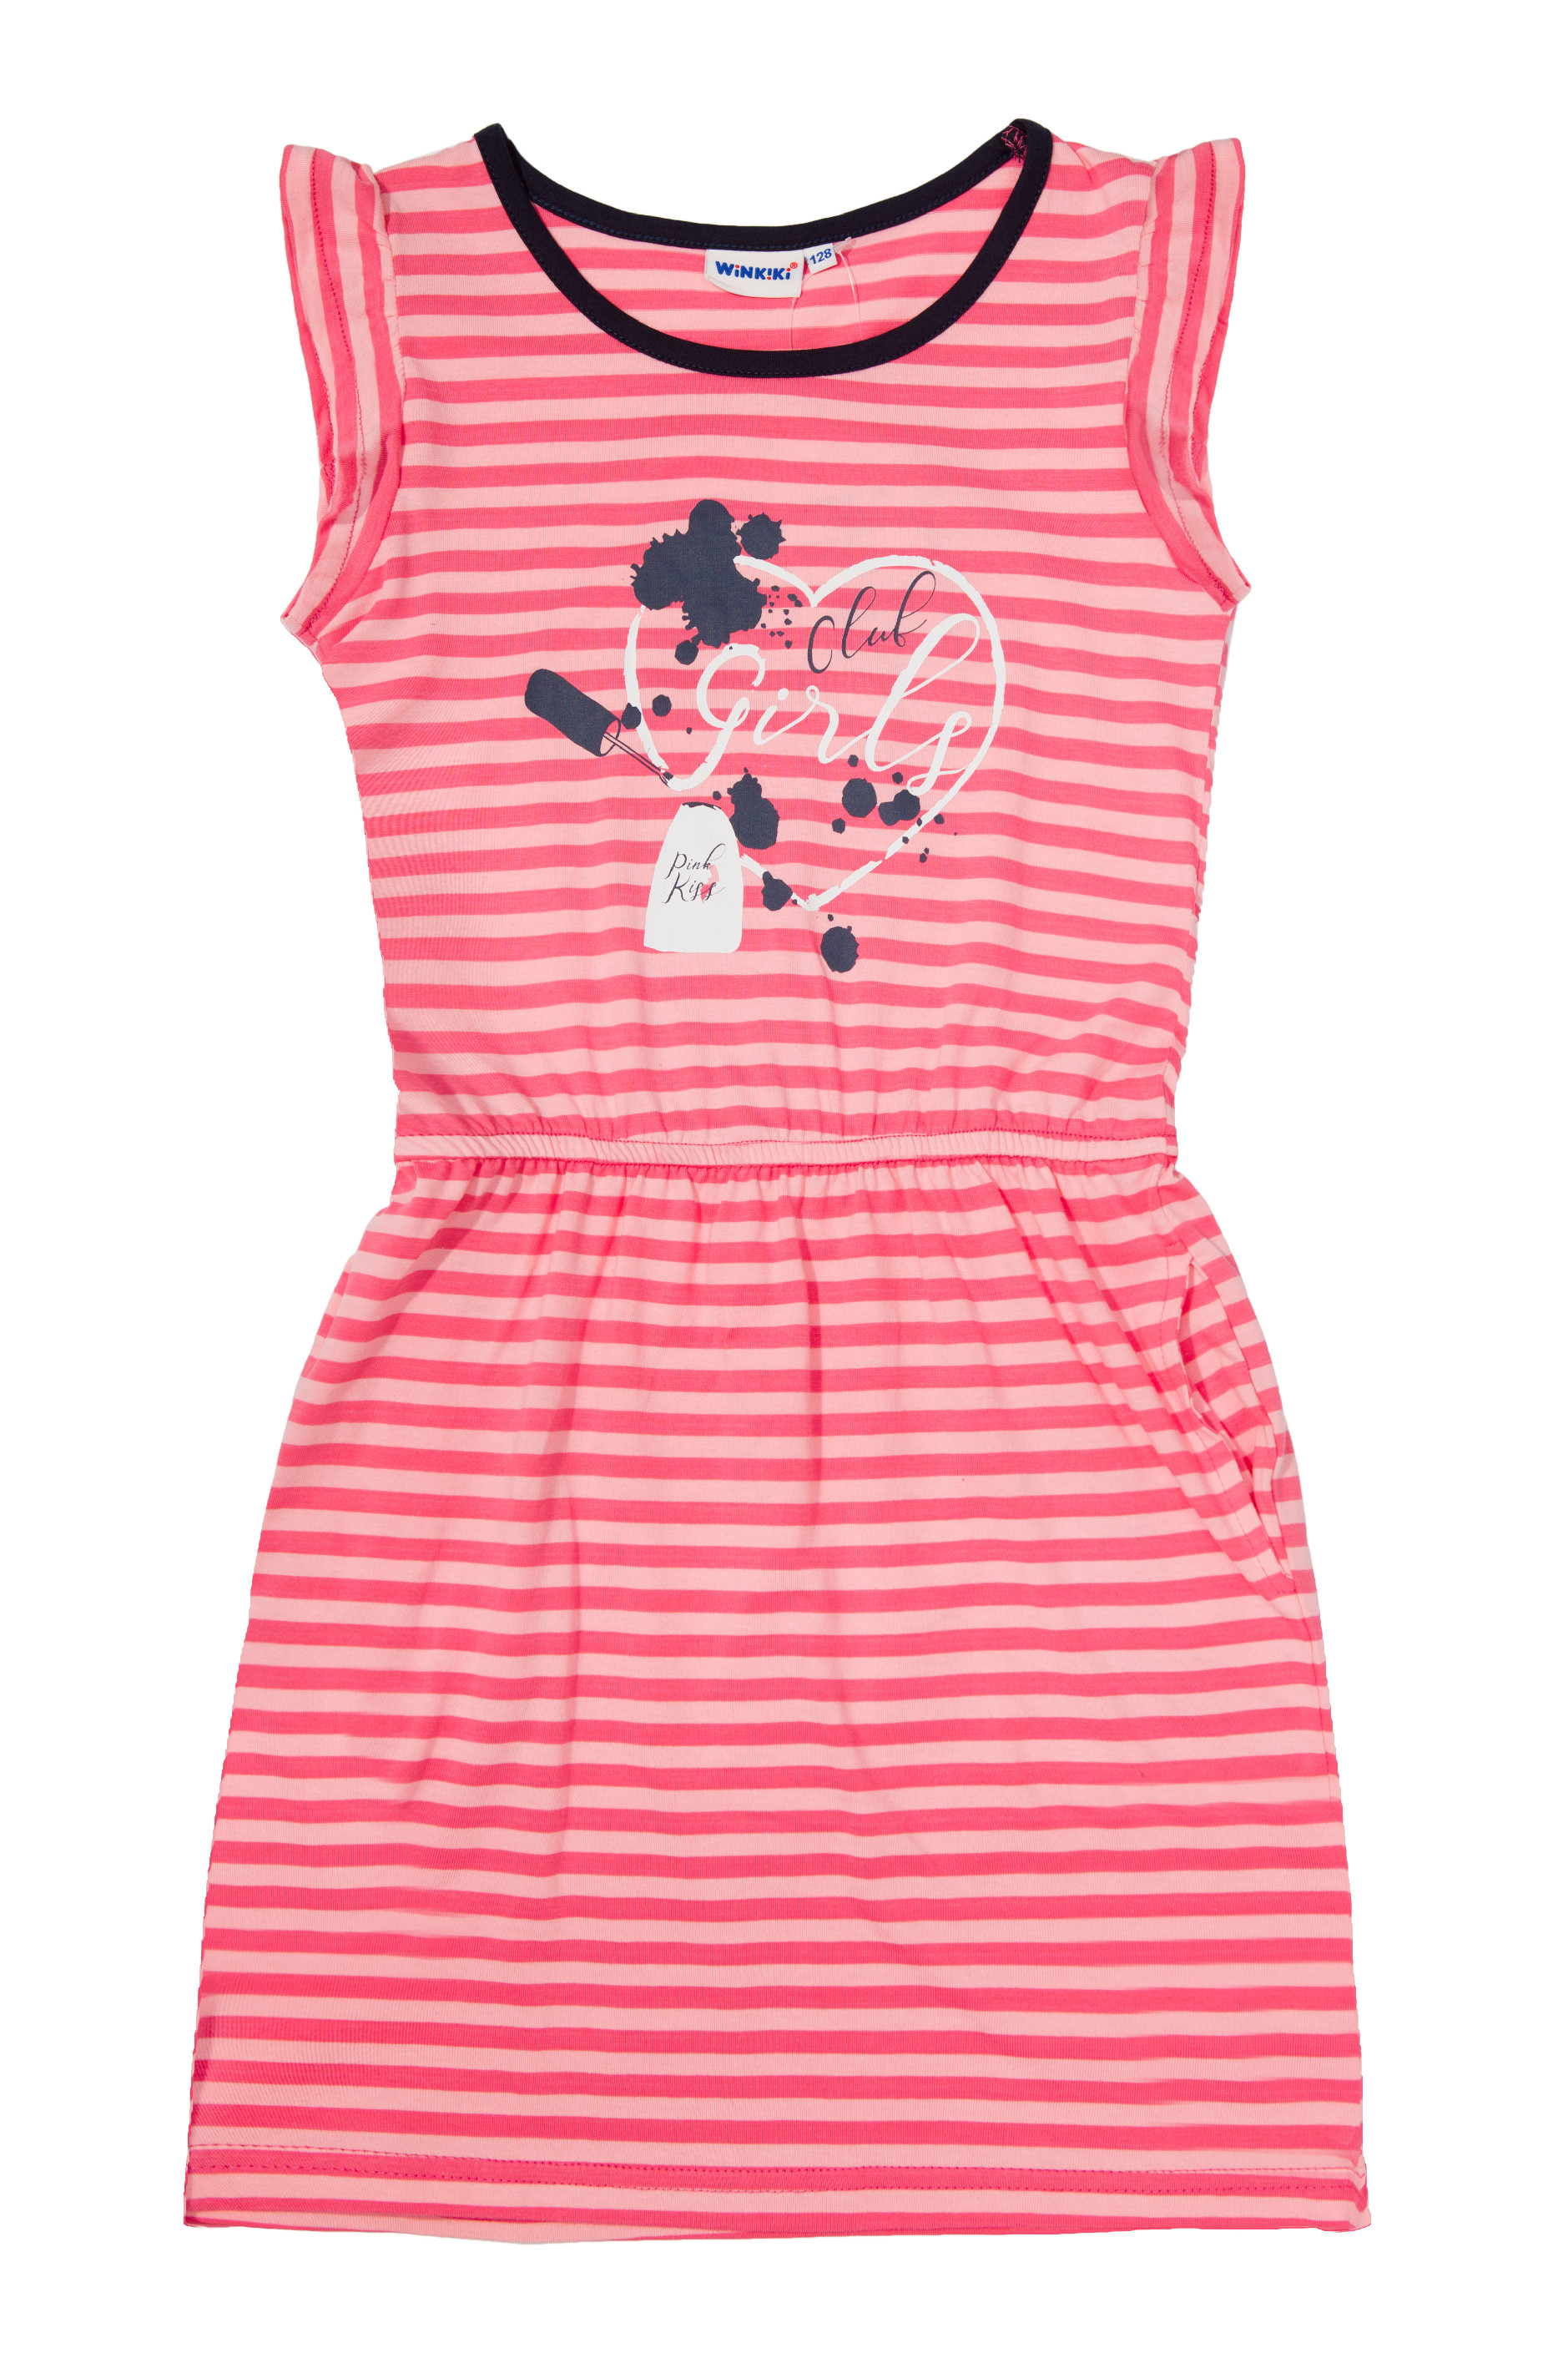 Dívčí šaty - WINKIKI WJG 01741, růžová Barva: Růžová, Velikost: 152